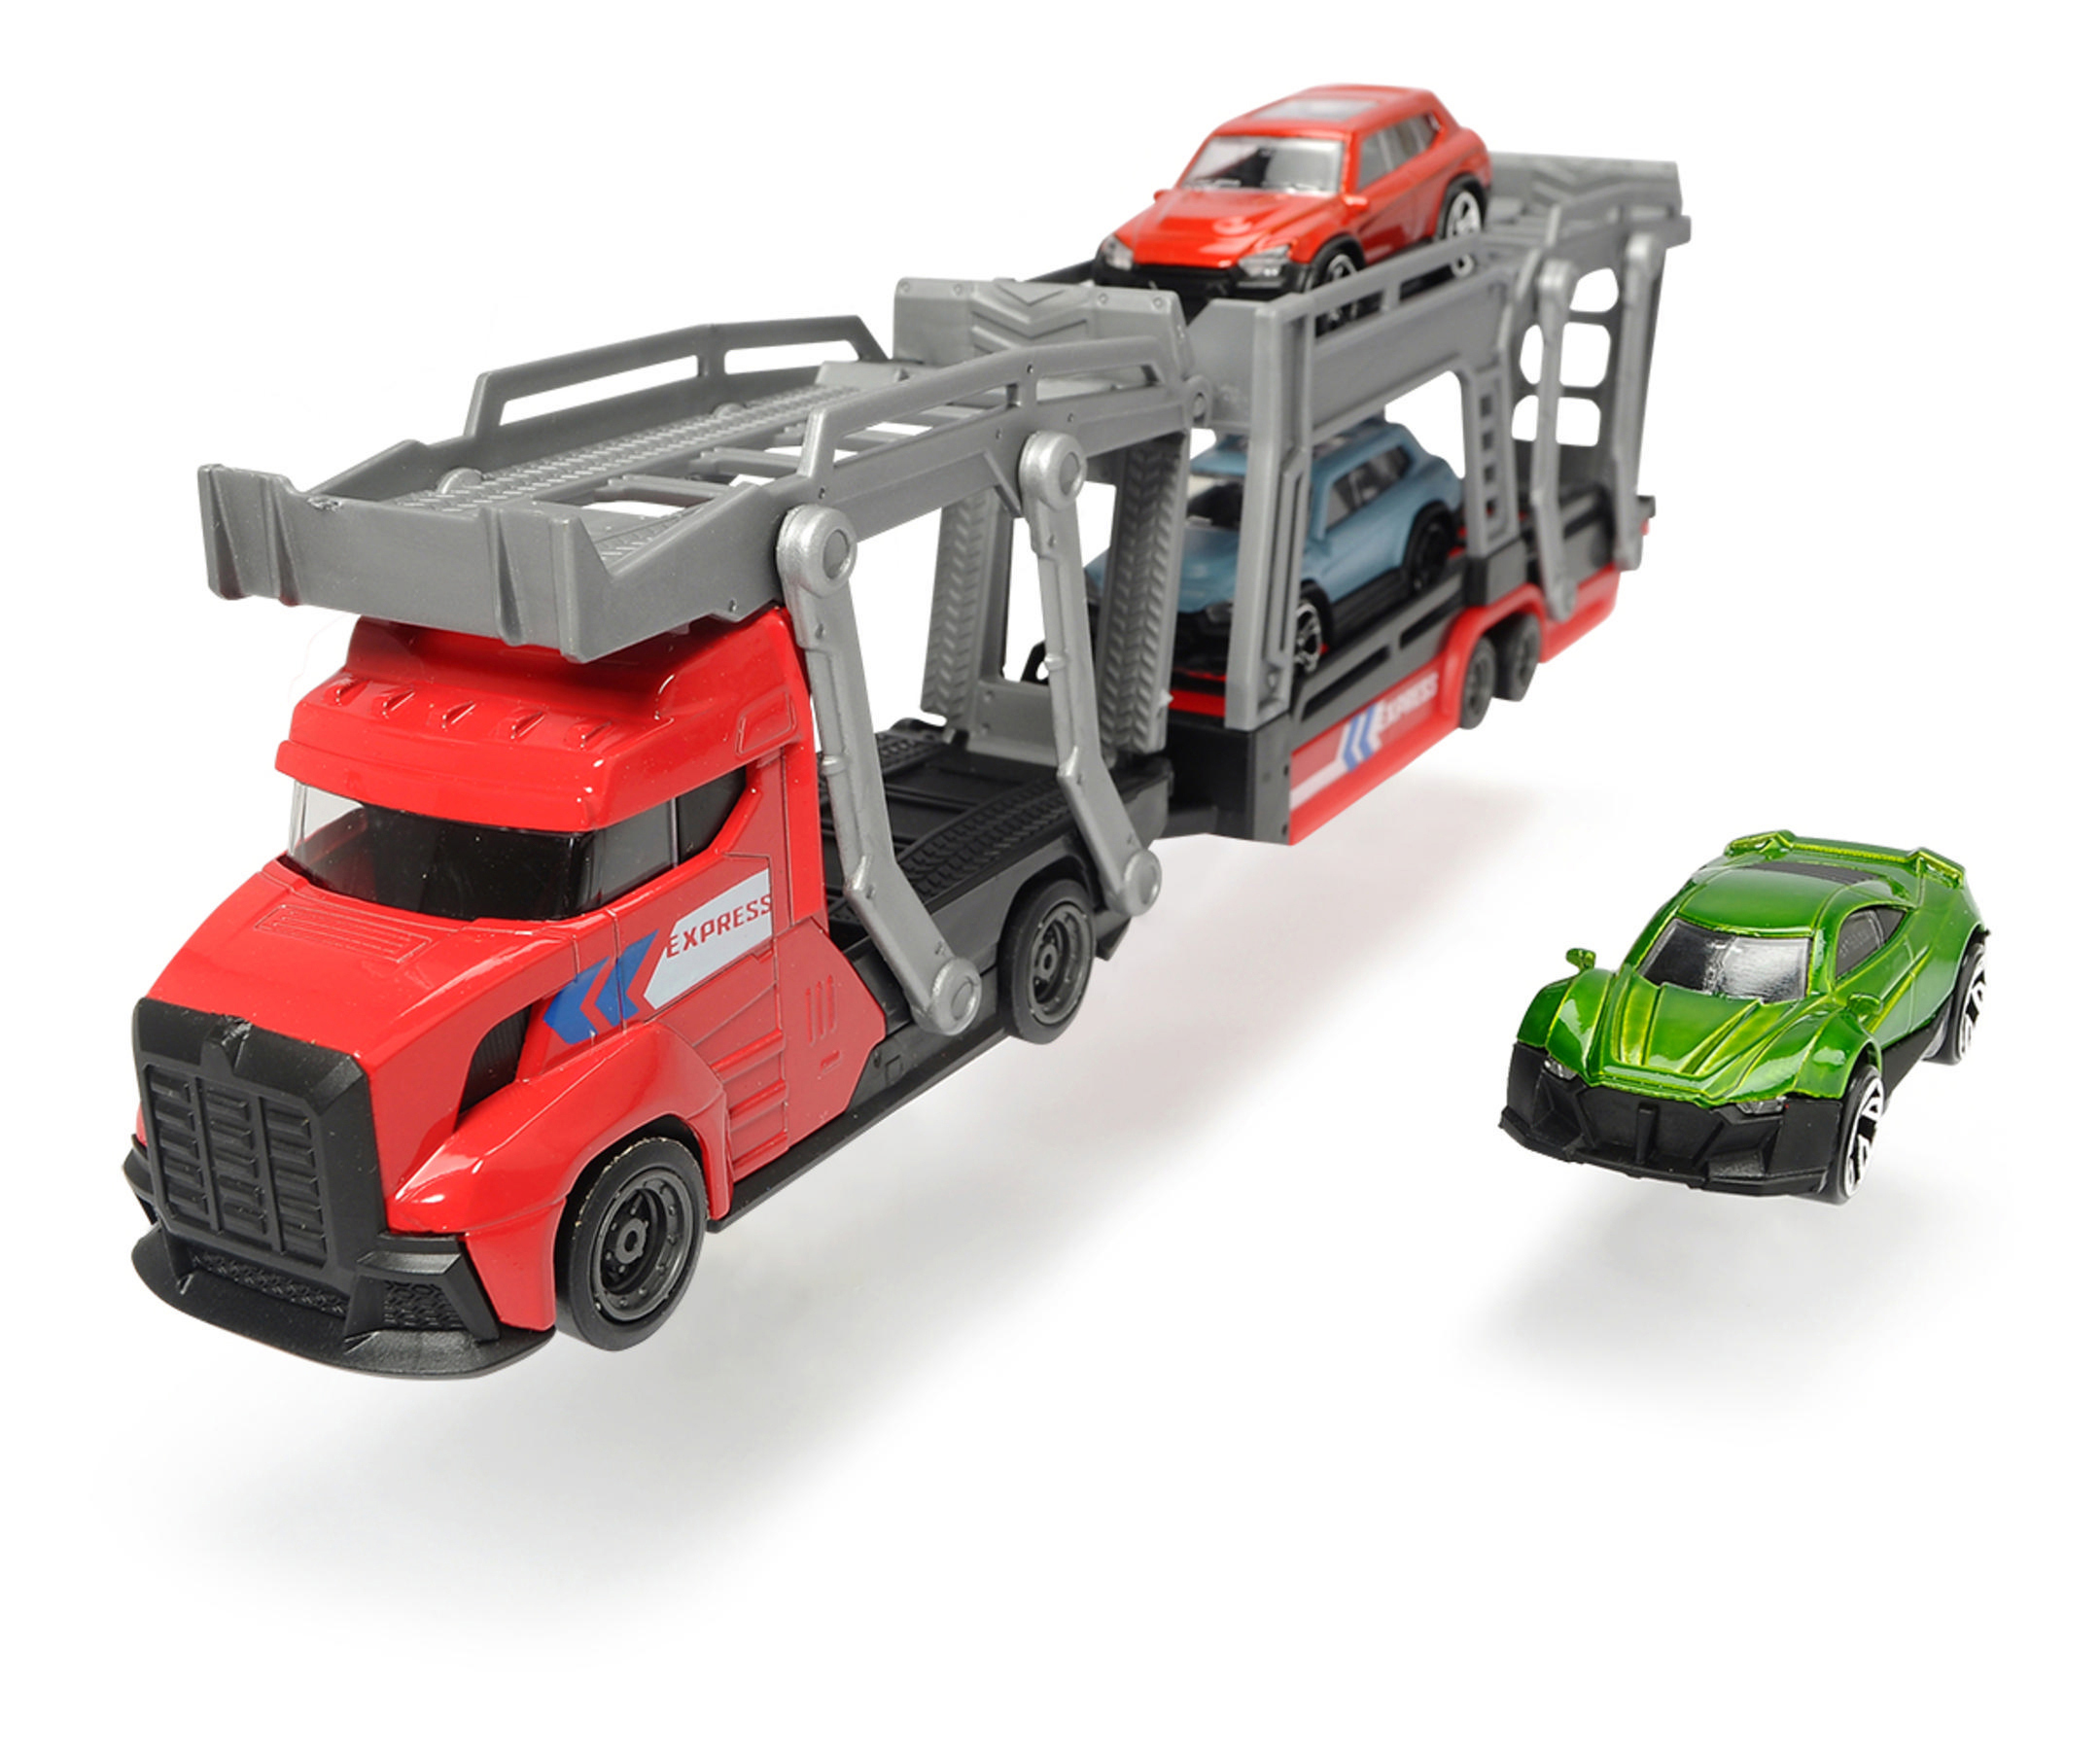 Die-cast sortiert Car DICKIE-TOYS Autos 3 Spielzeugauto inkl. Mehrfarbig Freilauf, PKW\'s, für 3 2-fach Autotransporter mit Carrier,